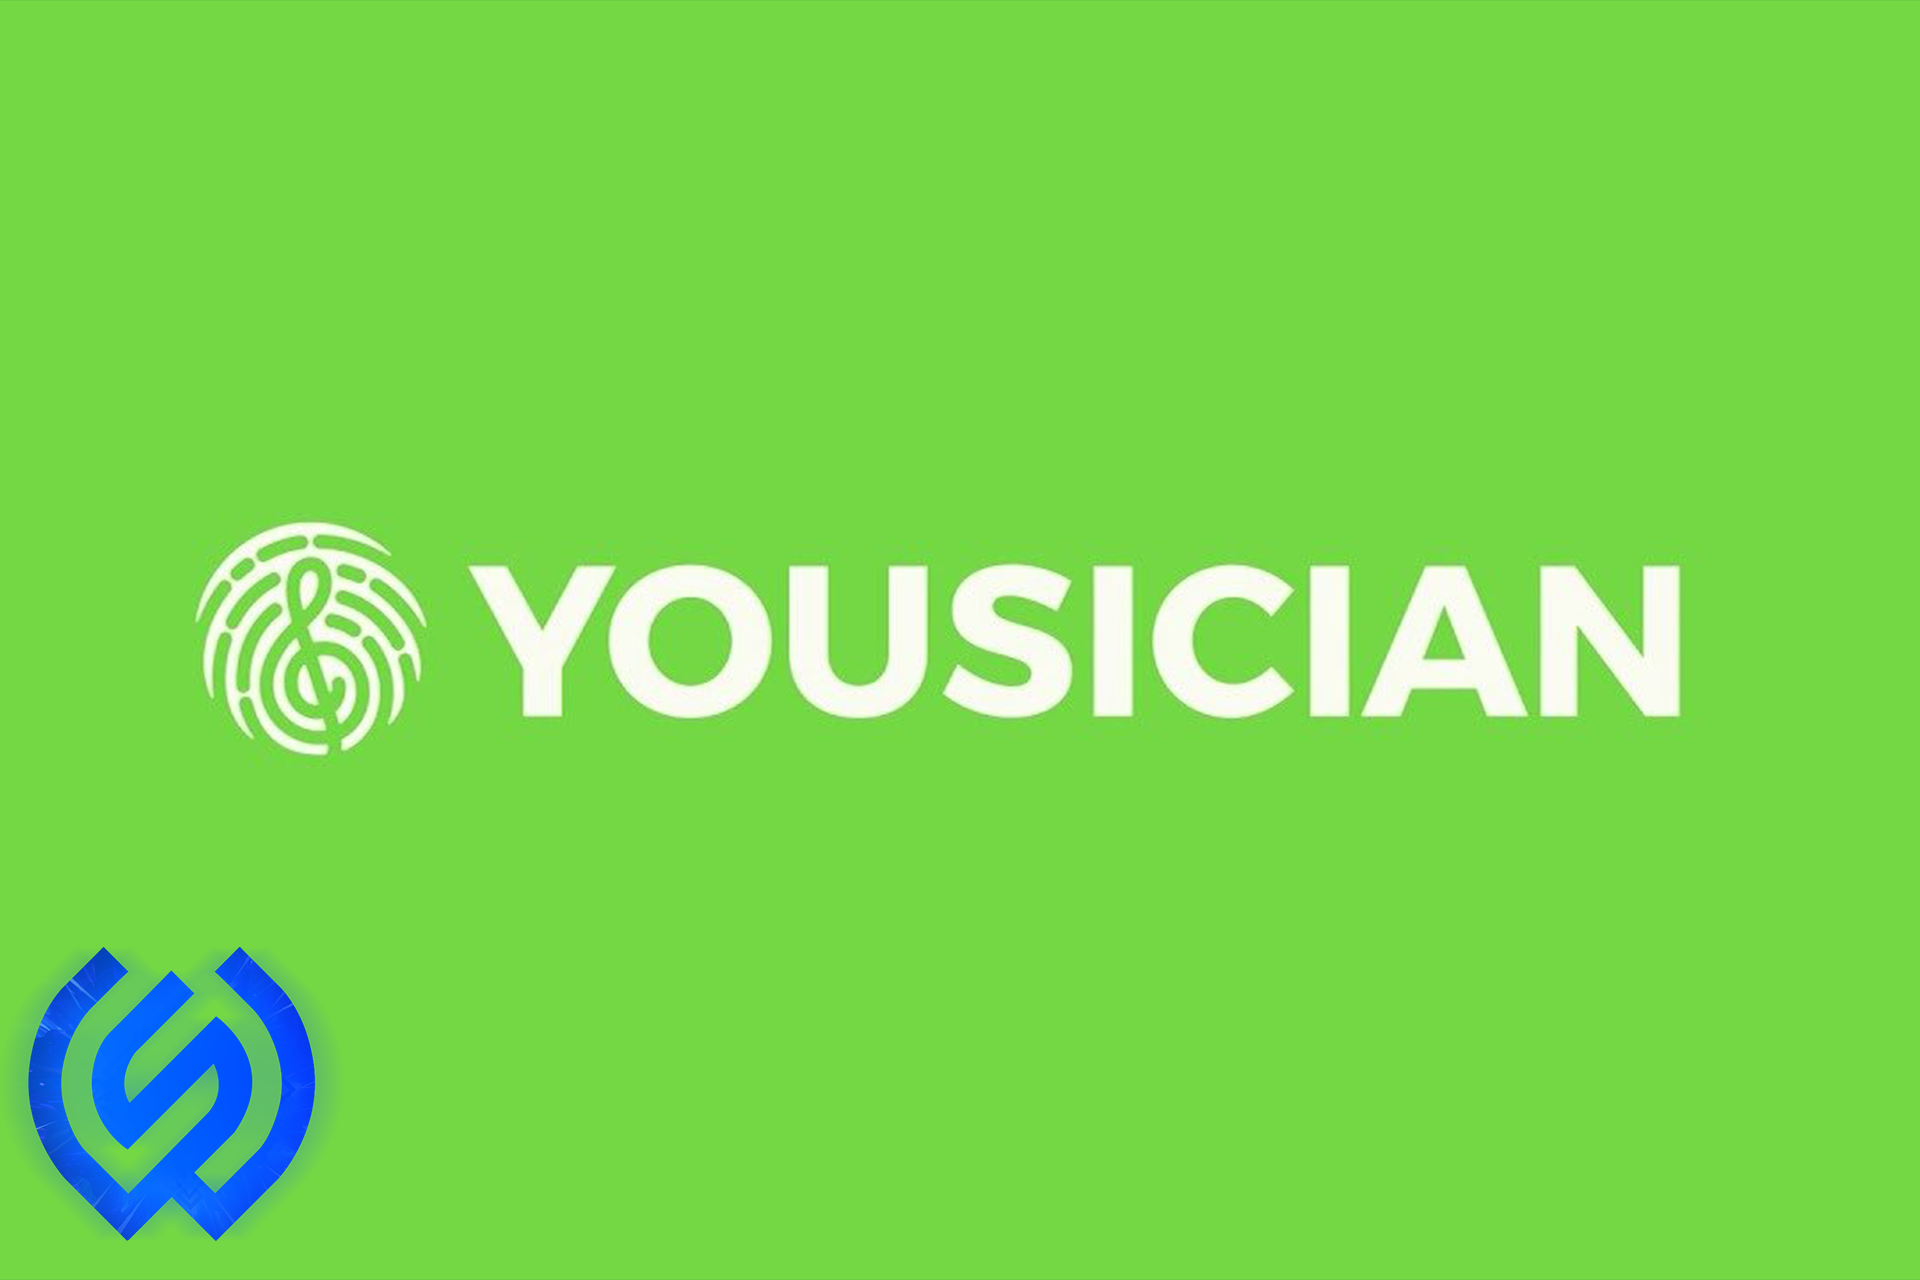 خرید اکانت  یوزیشن| Yousician  ارزان و صددرصد قانونی